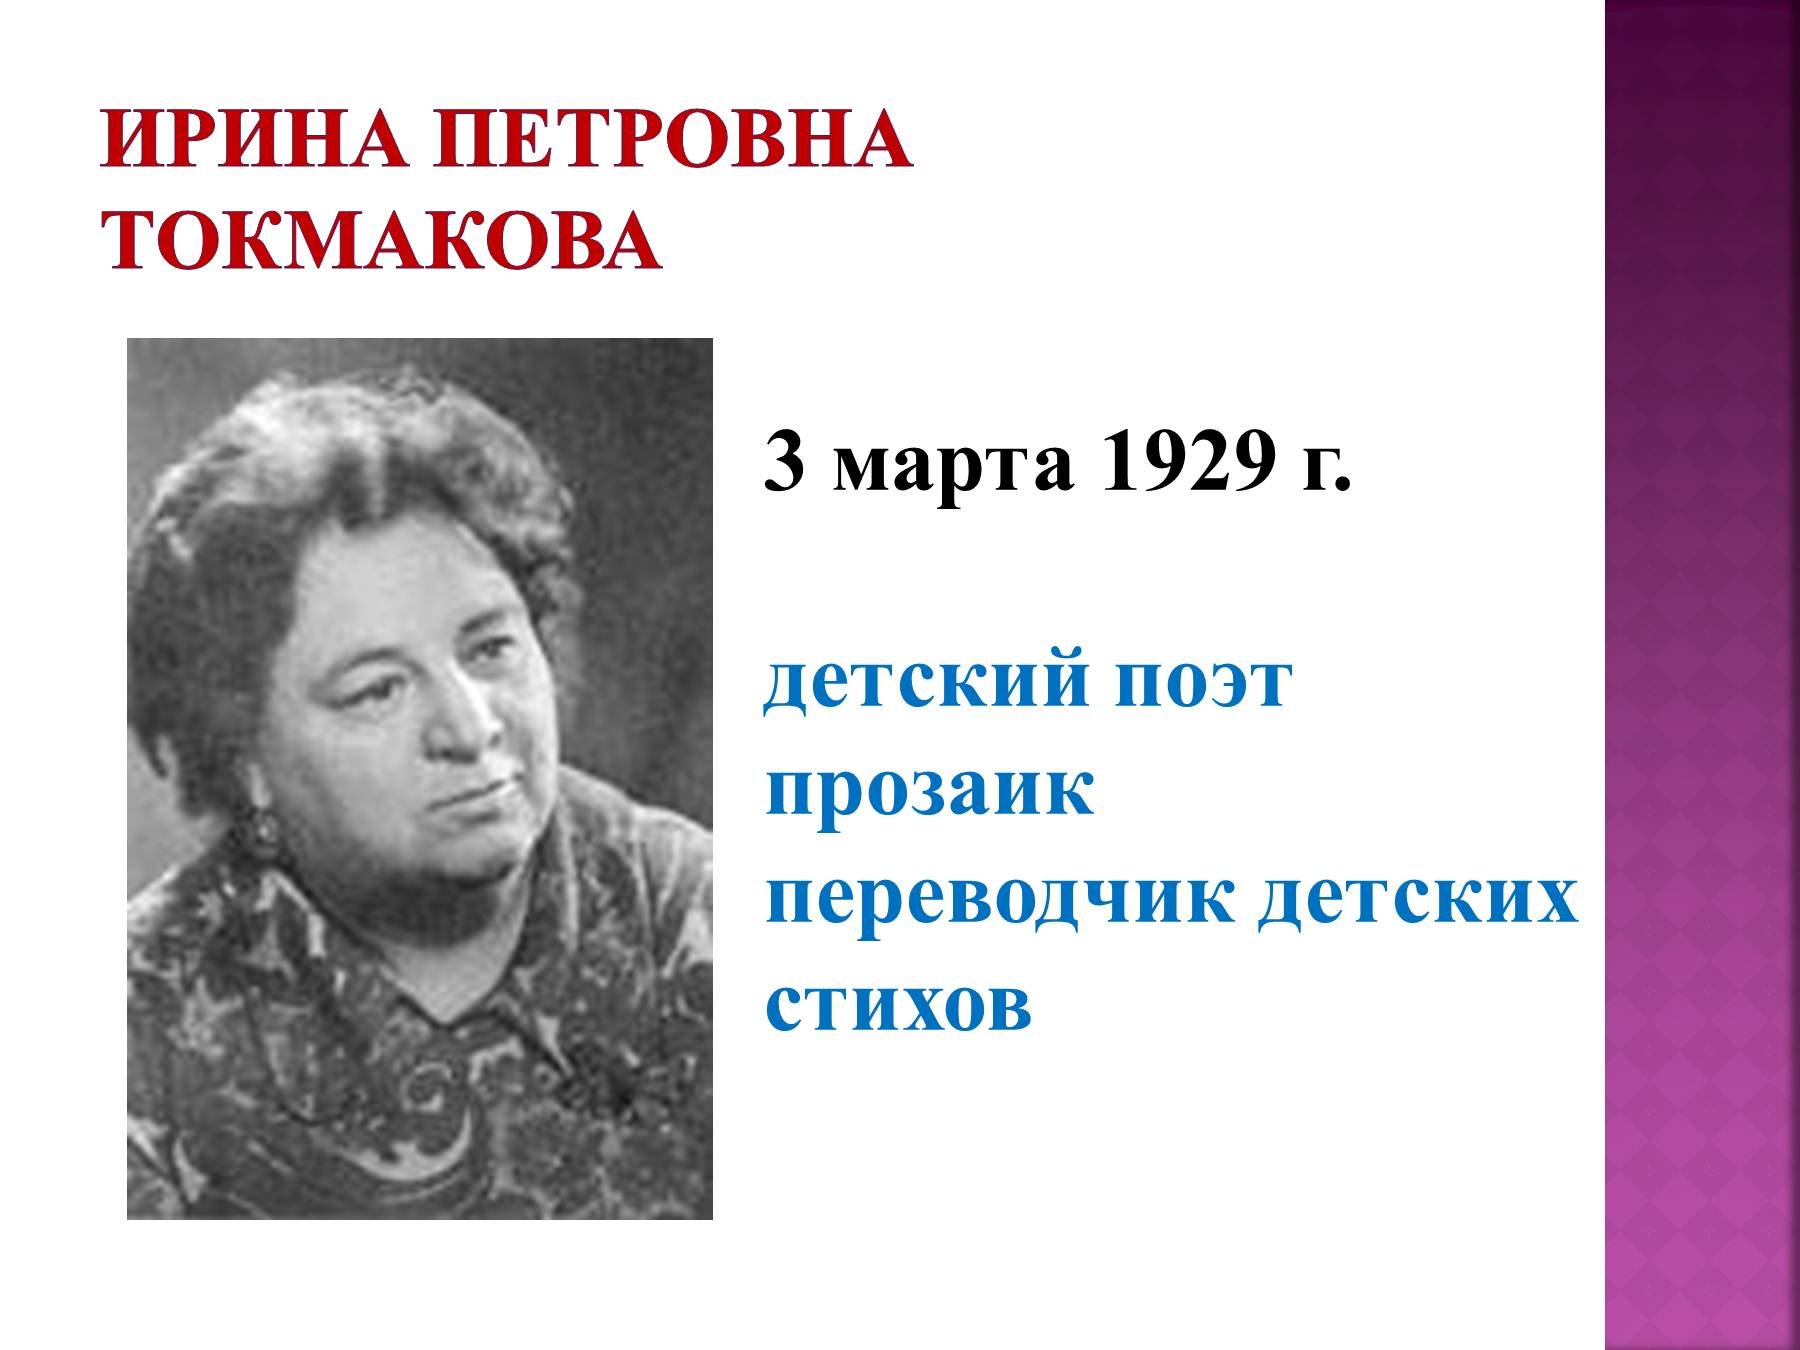 Петровна какое имя. Токмакова портрет писательницы.